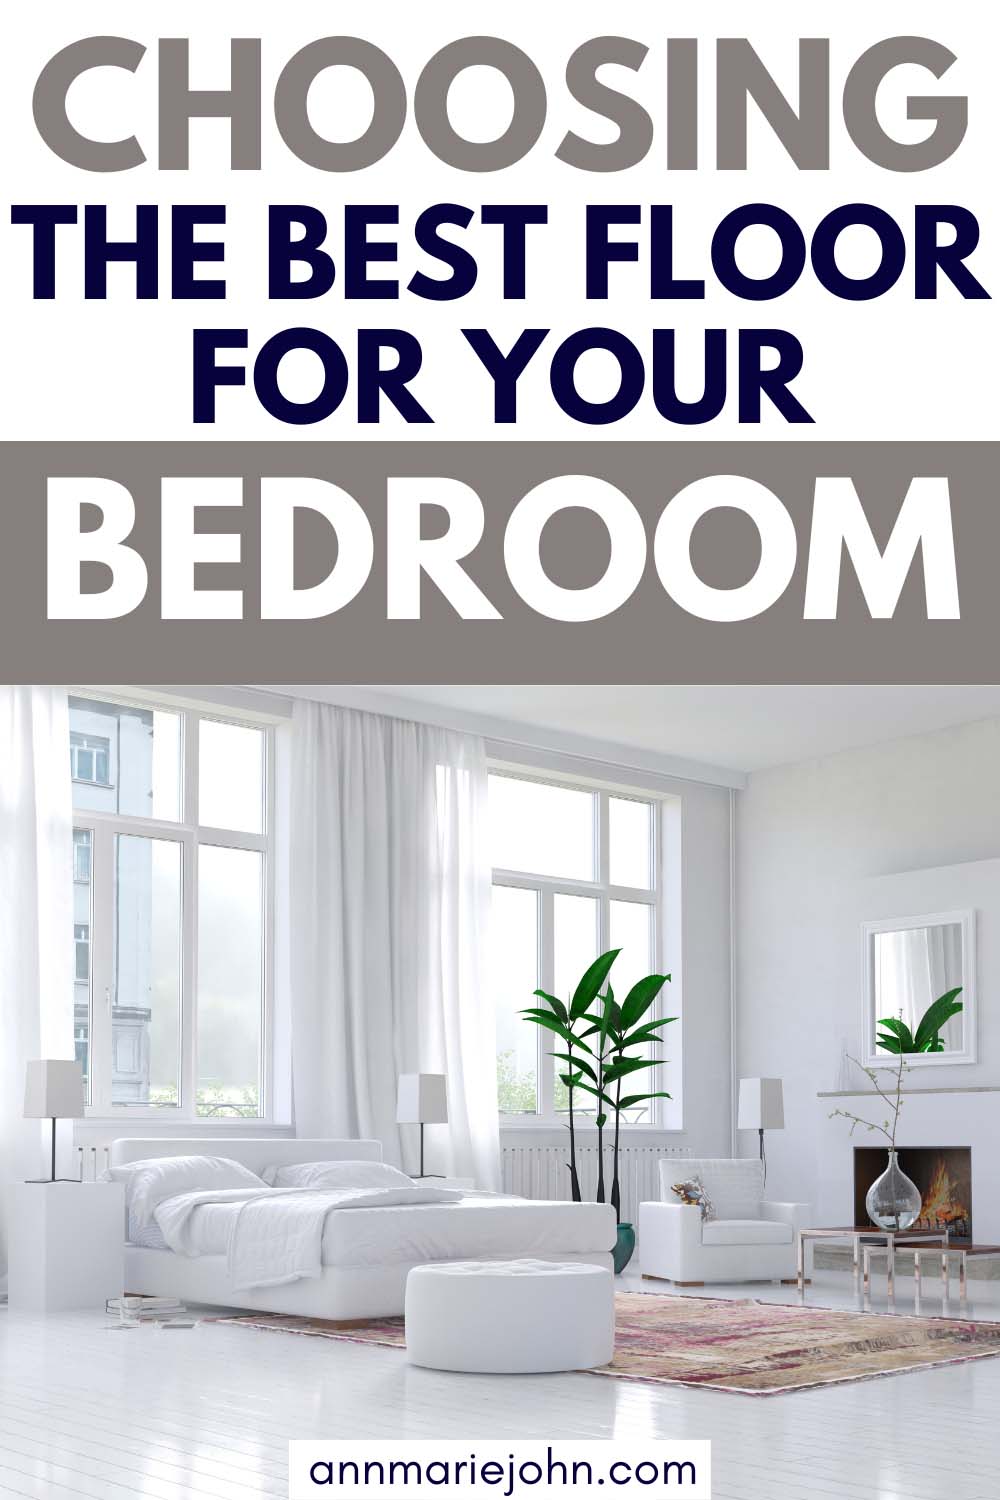 Choosing the Best Floor for Your Bedroom